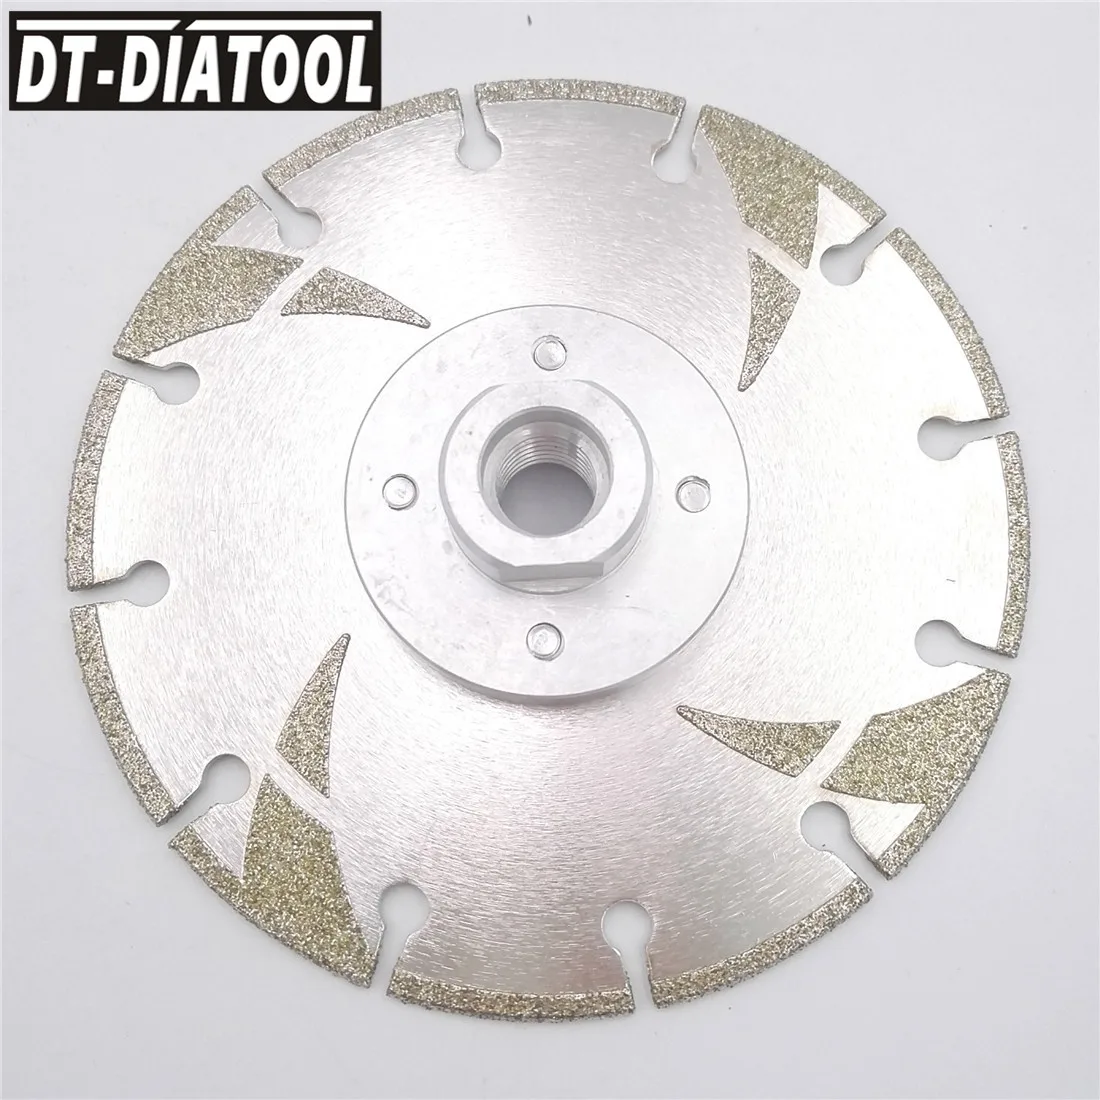 Алмазный диск для резки диаметром DT-DIATOOL мм, 2 шт. от AliExpress RU&CIS NEW